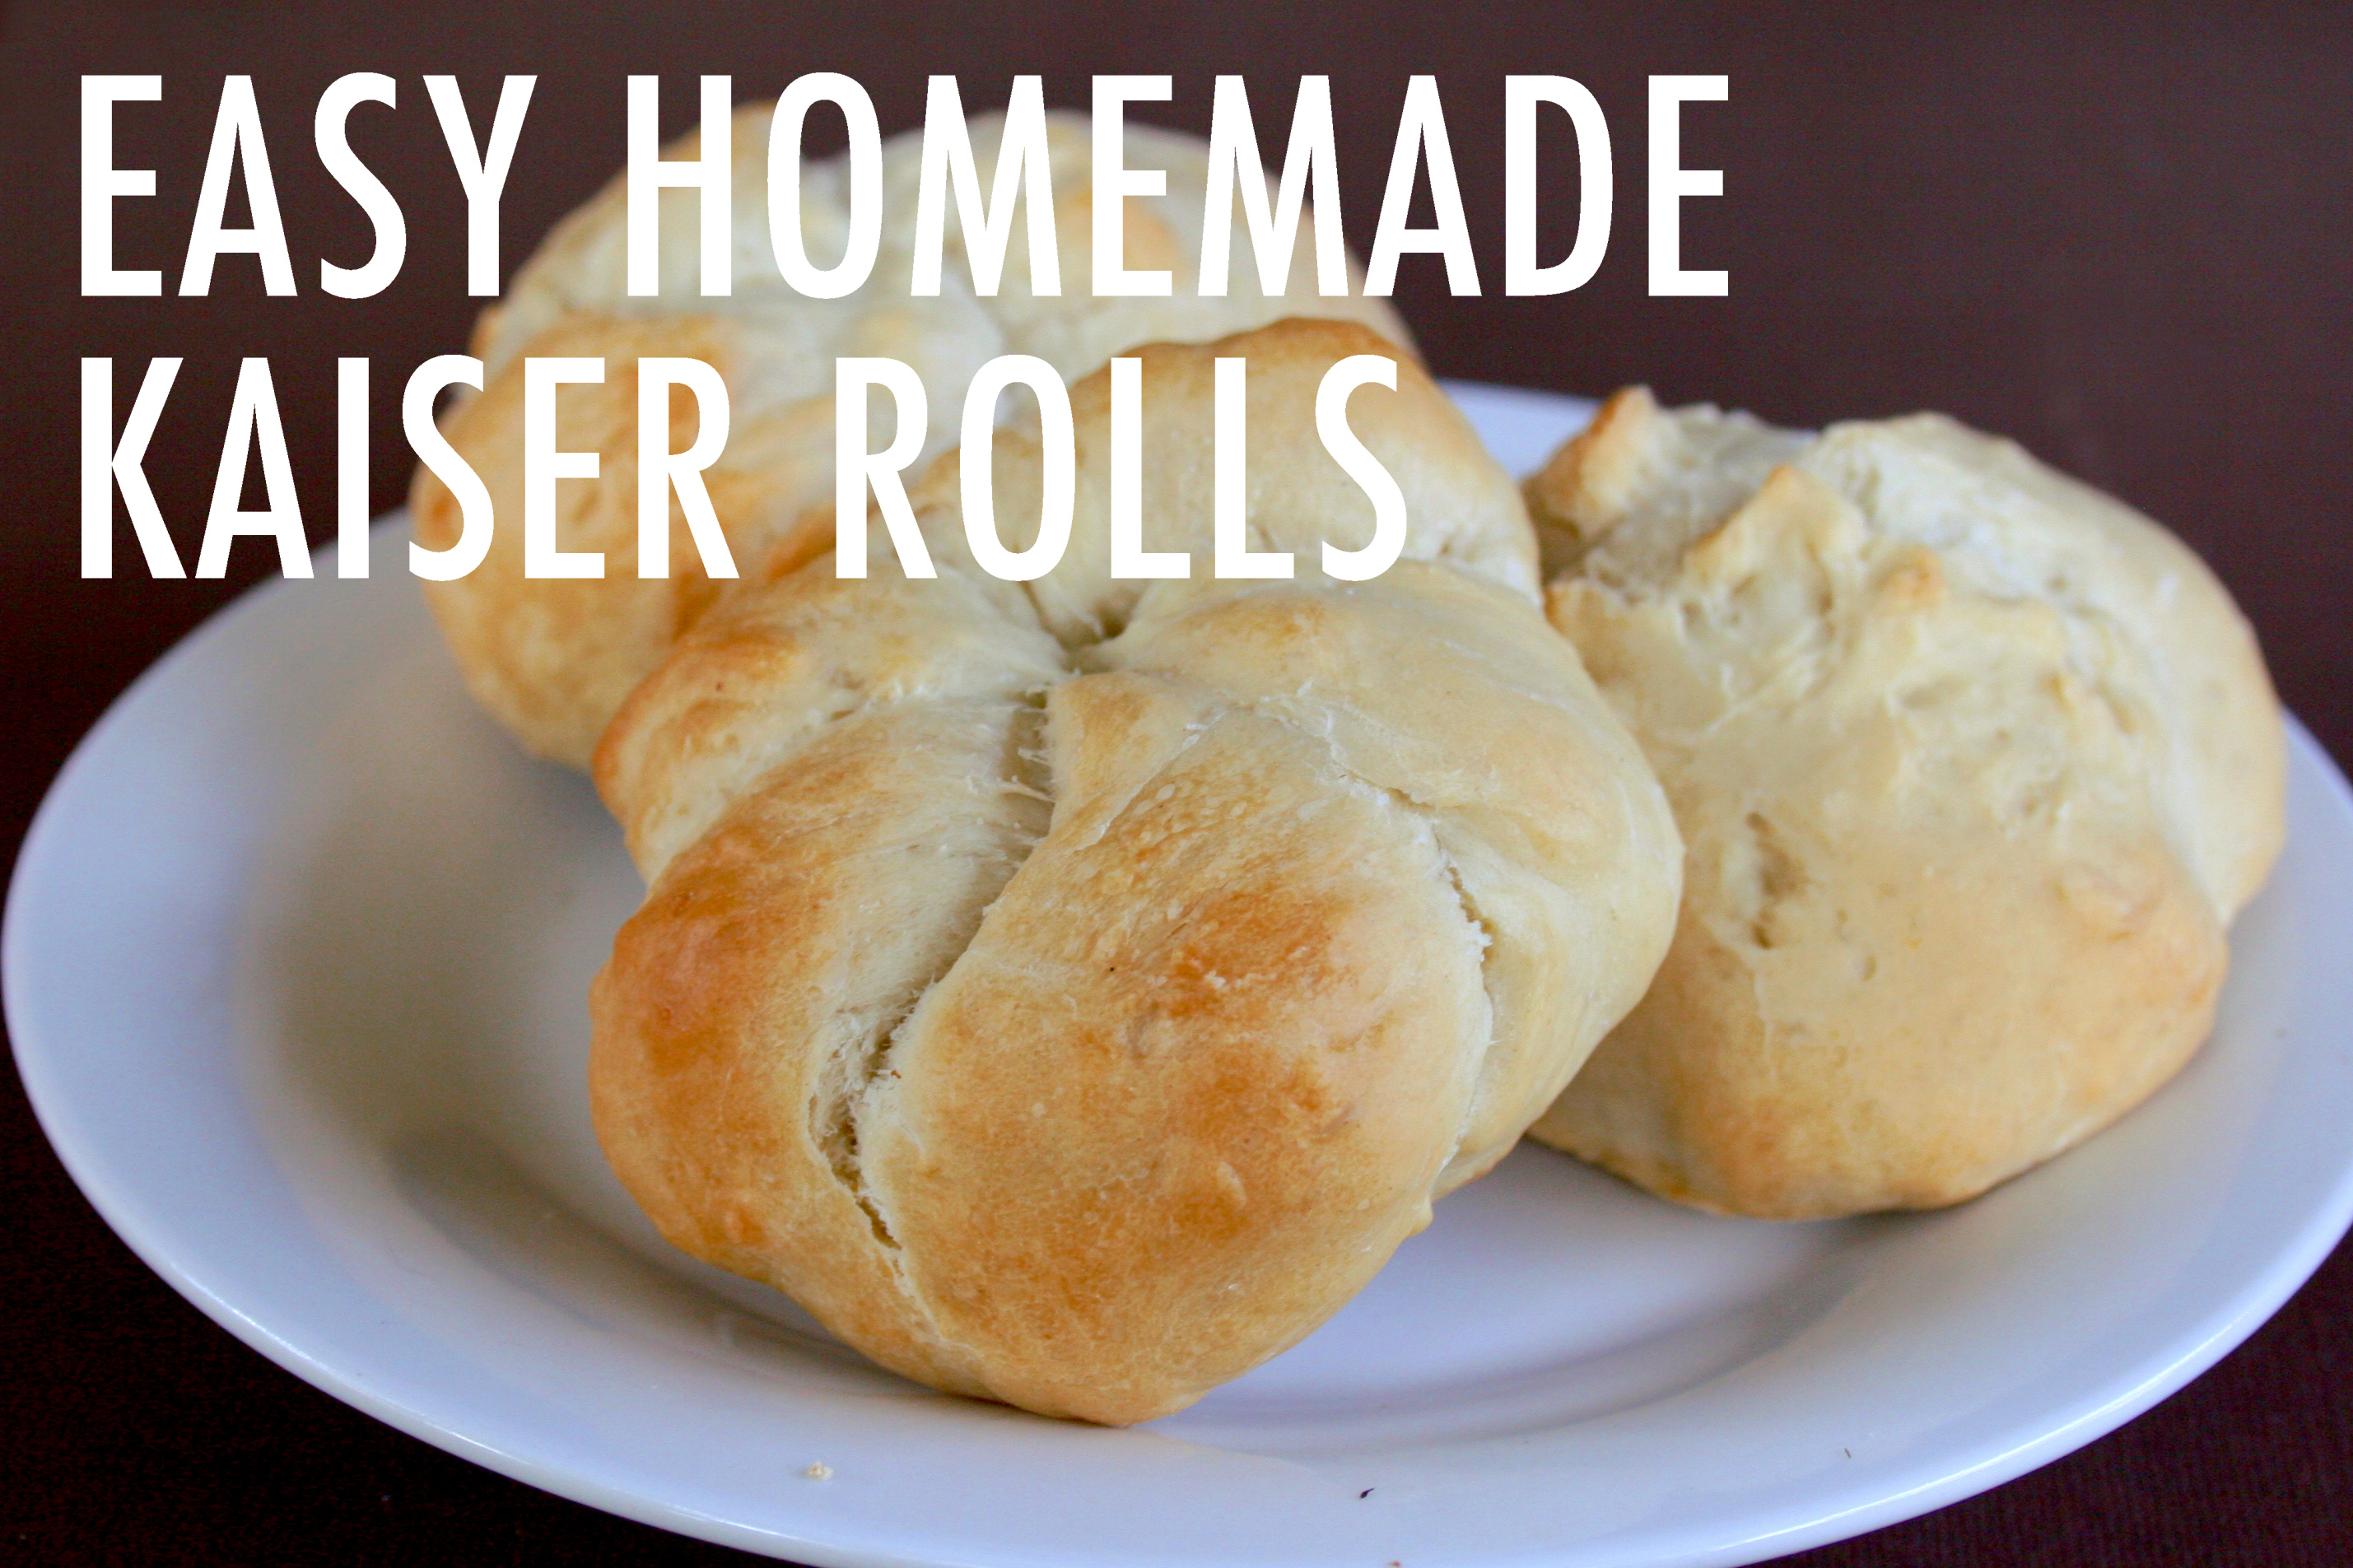 Homemade Kaiser rolls